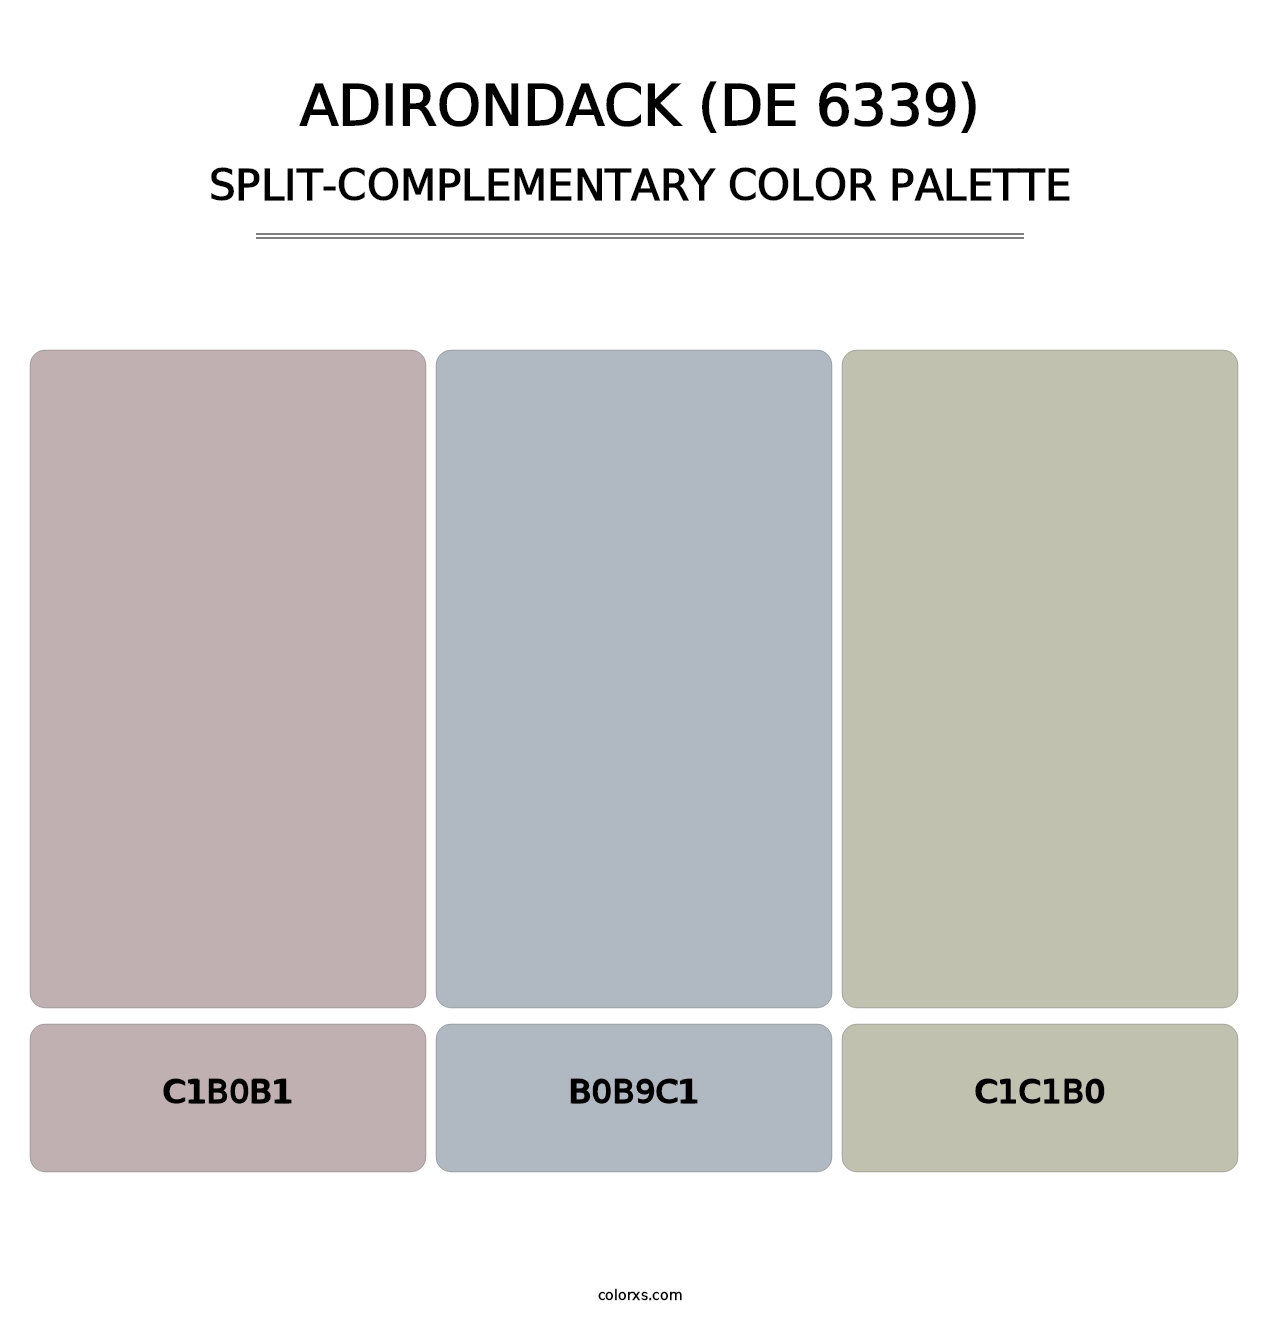 Adirondack (DE 6339) - Split-Complementary Color Palette